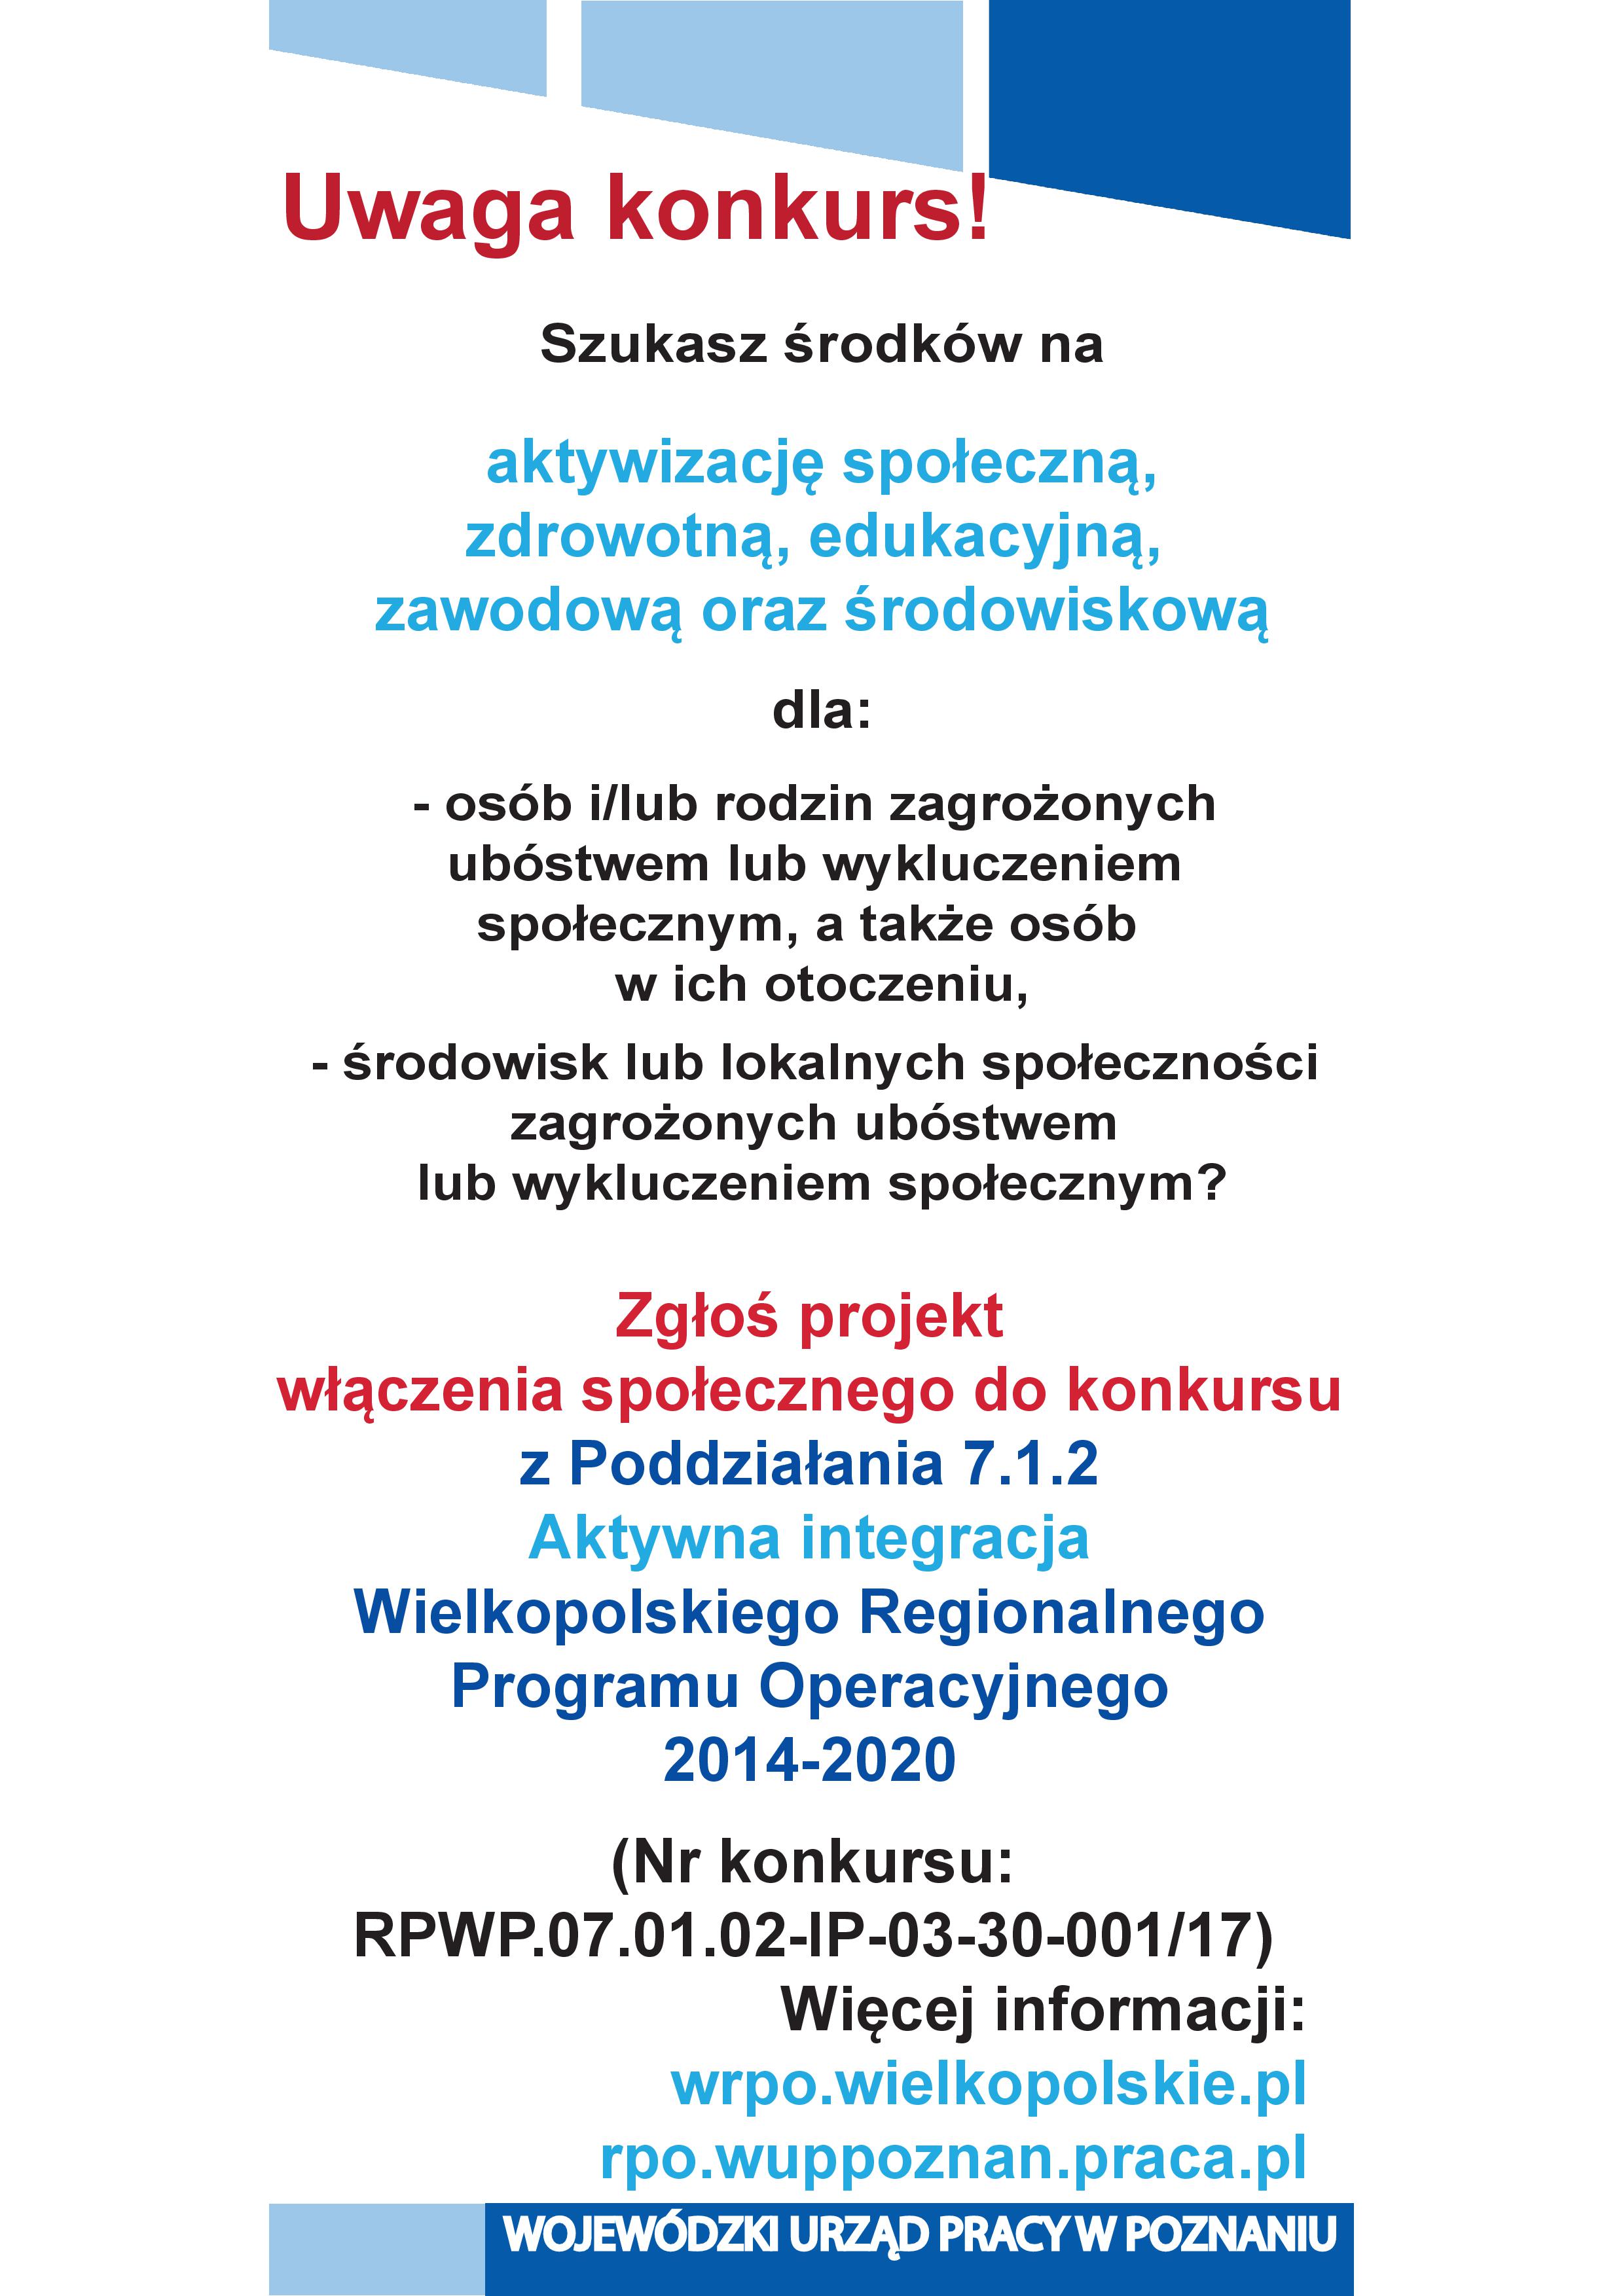 Ulotka promująca konkurs 7.1.2 WRPO 2014  (2017)